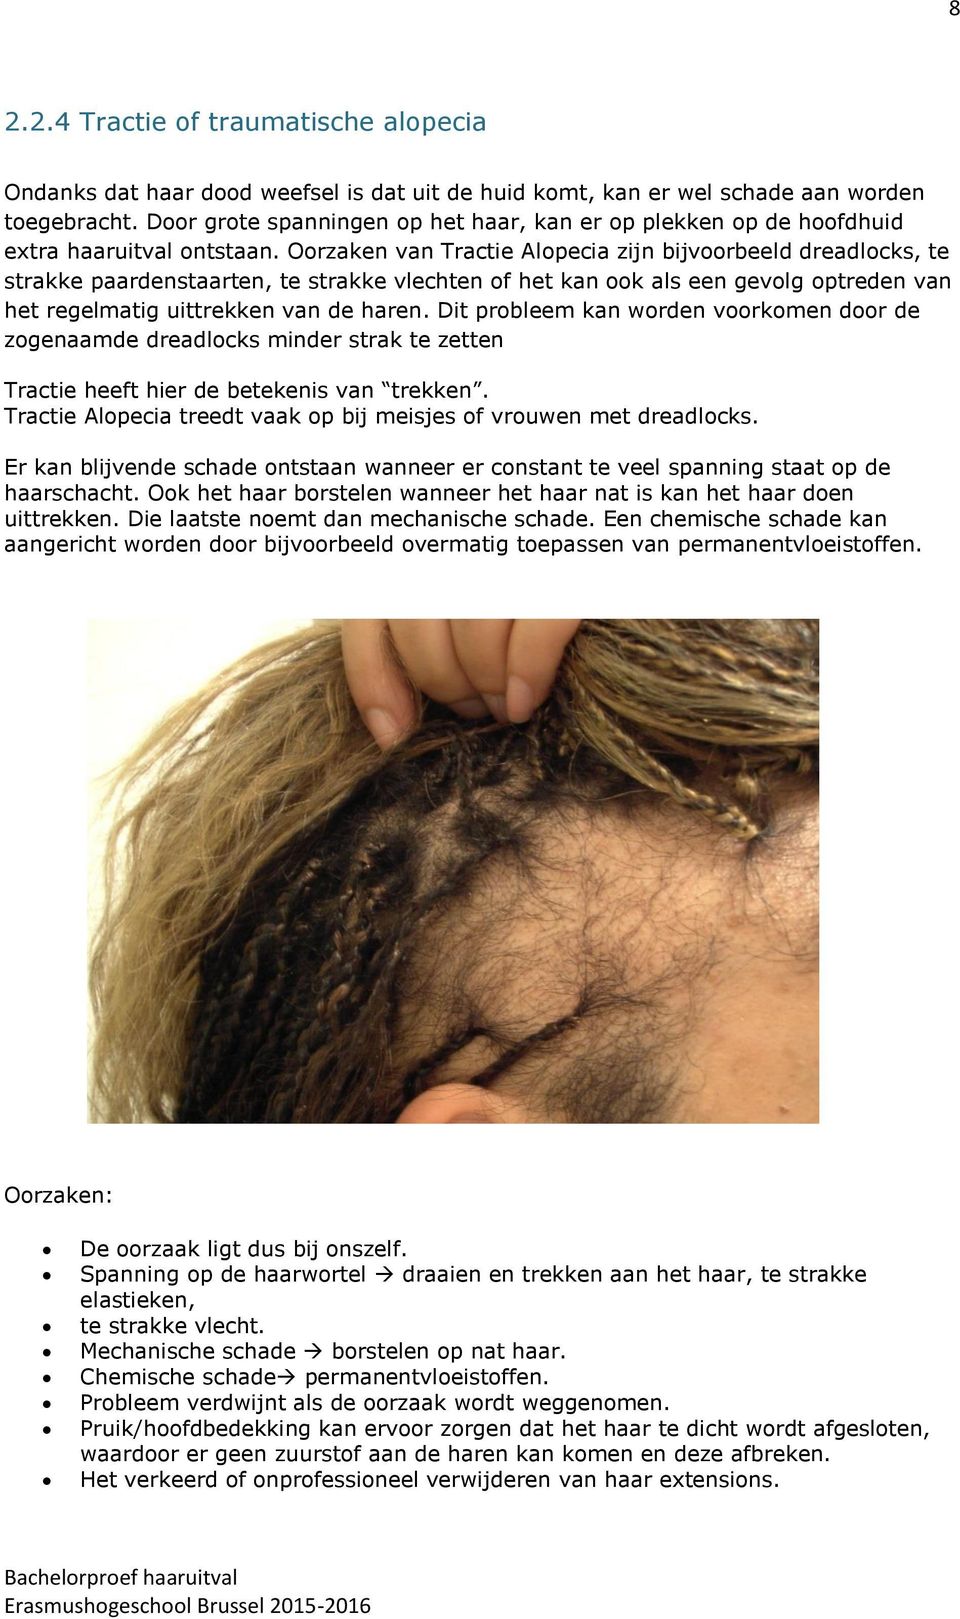 Oorzaken van Tractie Alopecia zijn bijvoorbeeld dreadlocks, te strakke paardenstaarten, te strakke vlechten of het kan ook als een gevolg optreden van het regelmatig uittrekken van de haren.